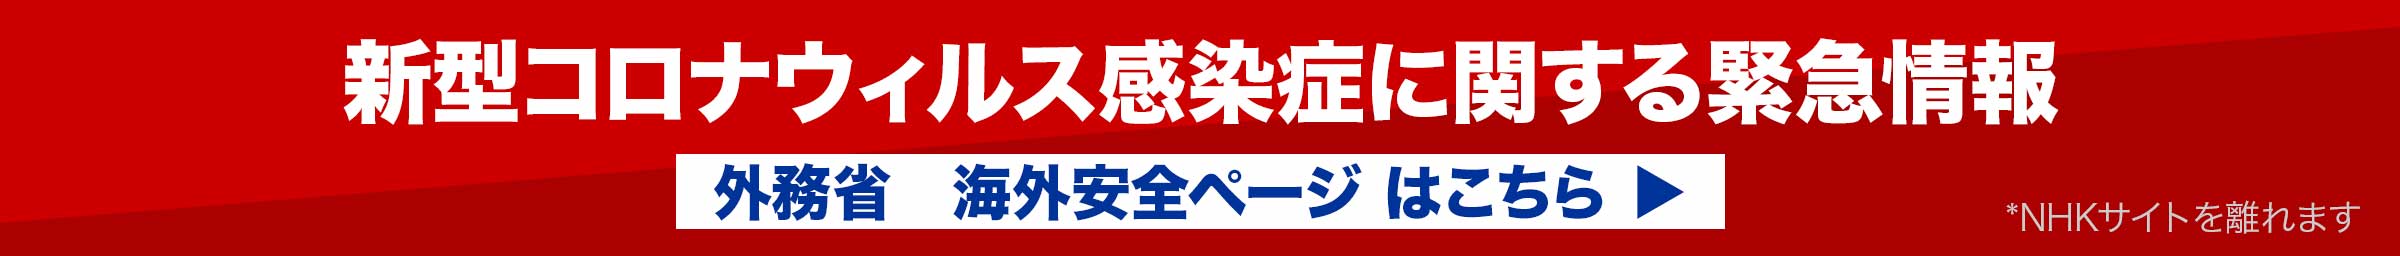 海外安全情報 ラジオ日本 Nhkワールド 日本語